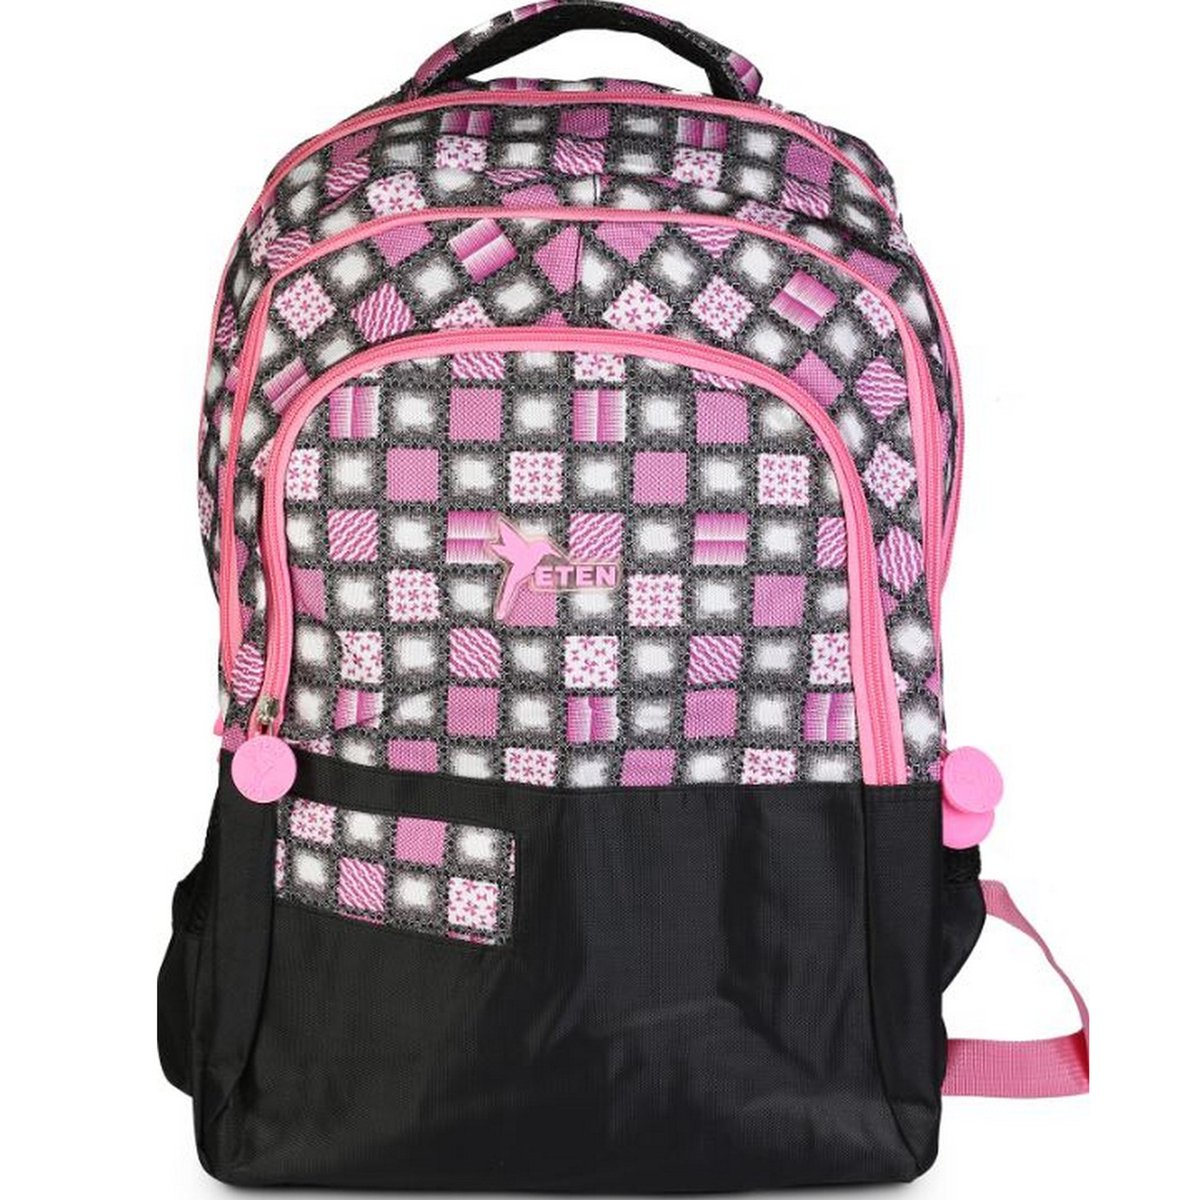 Eten Teenage Backpack B253-19BP 19inch Assorted